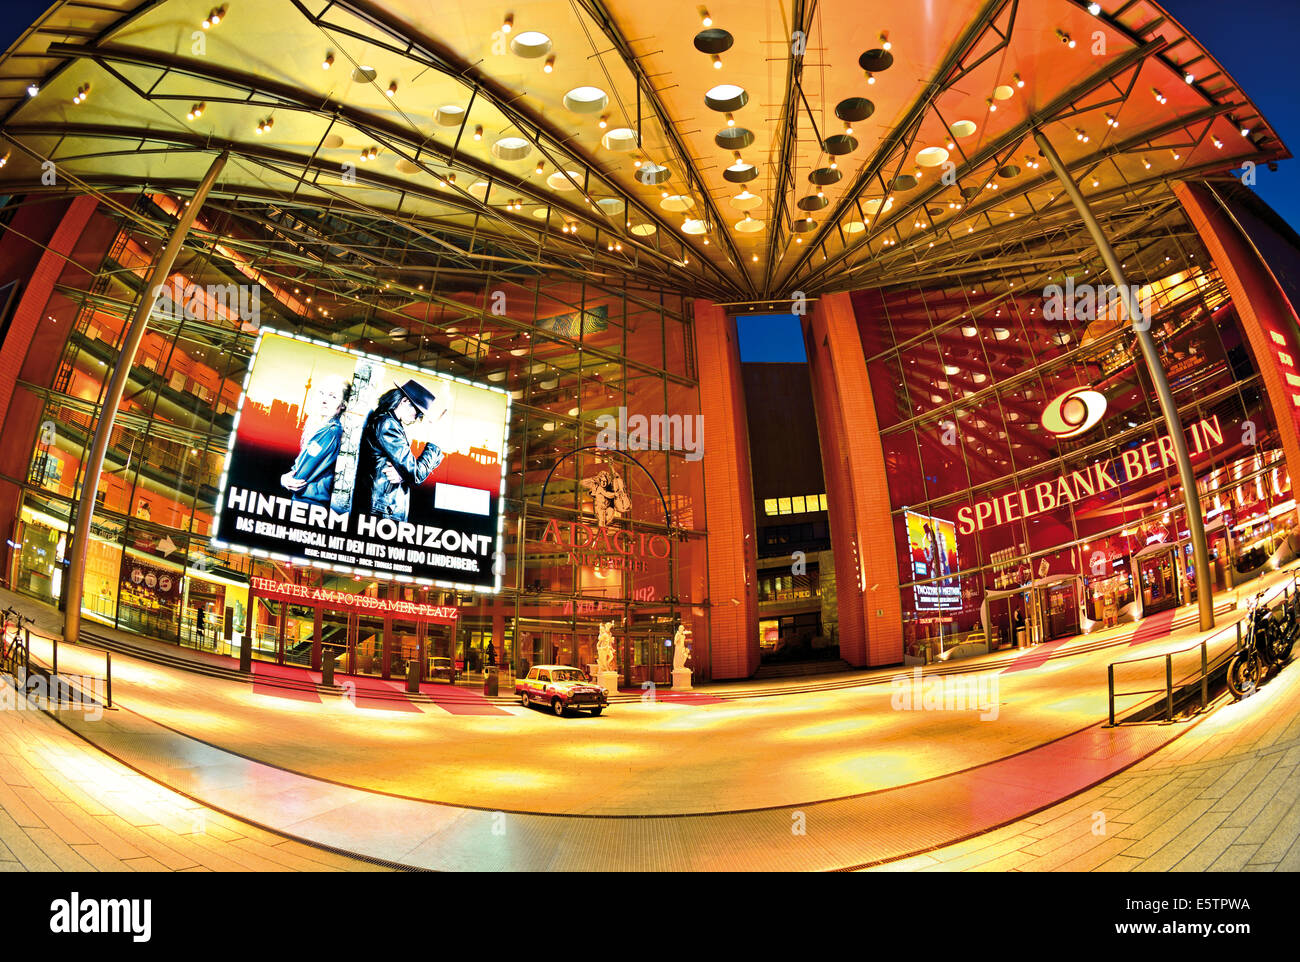 Deutschland, Berlin: Nächtlichen Blick auf das Stage Theater am Potsdamer Platz mit Musical "Hinterm Horizont" angekündigt Stockfoto